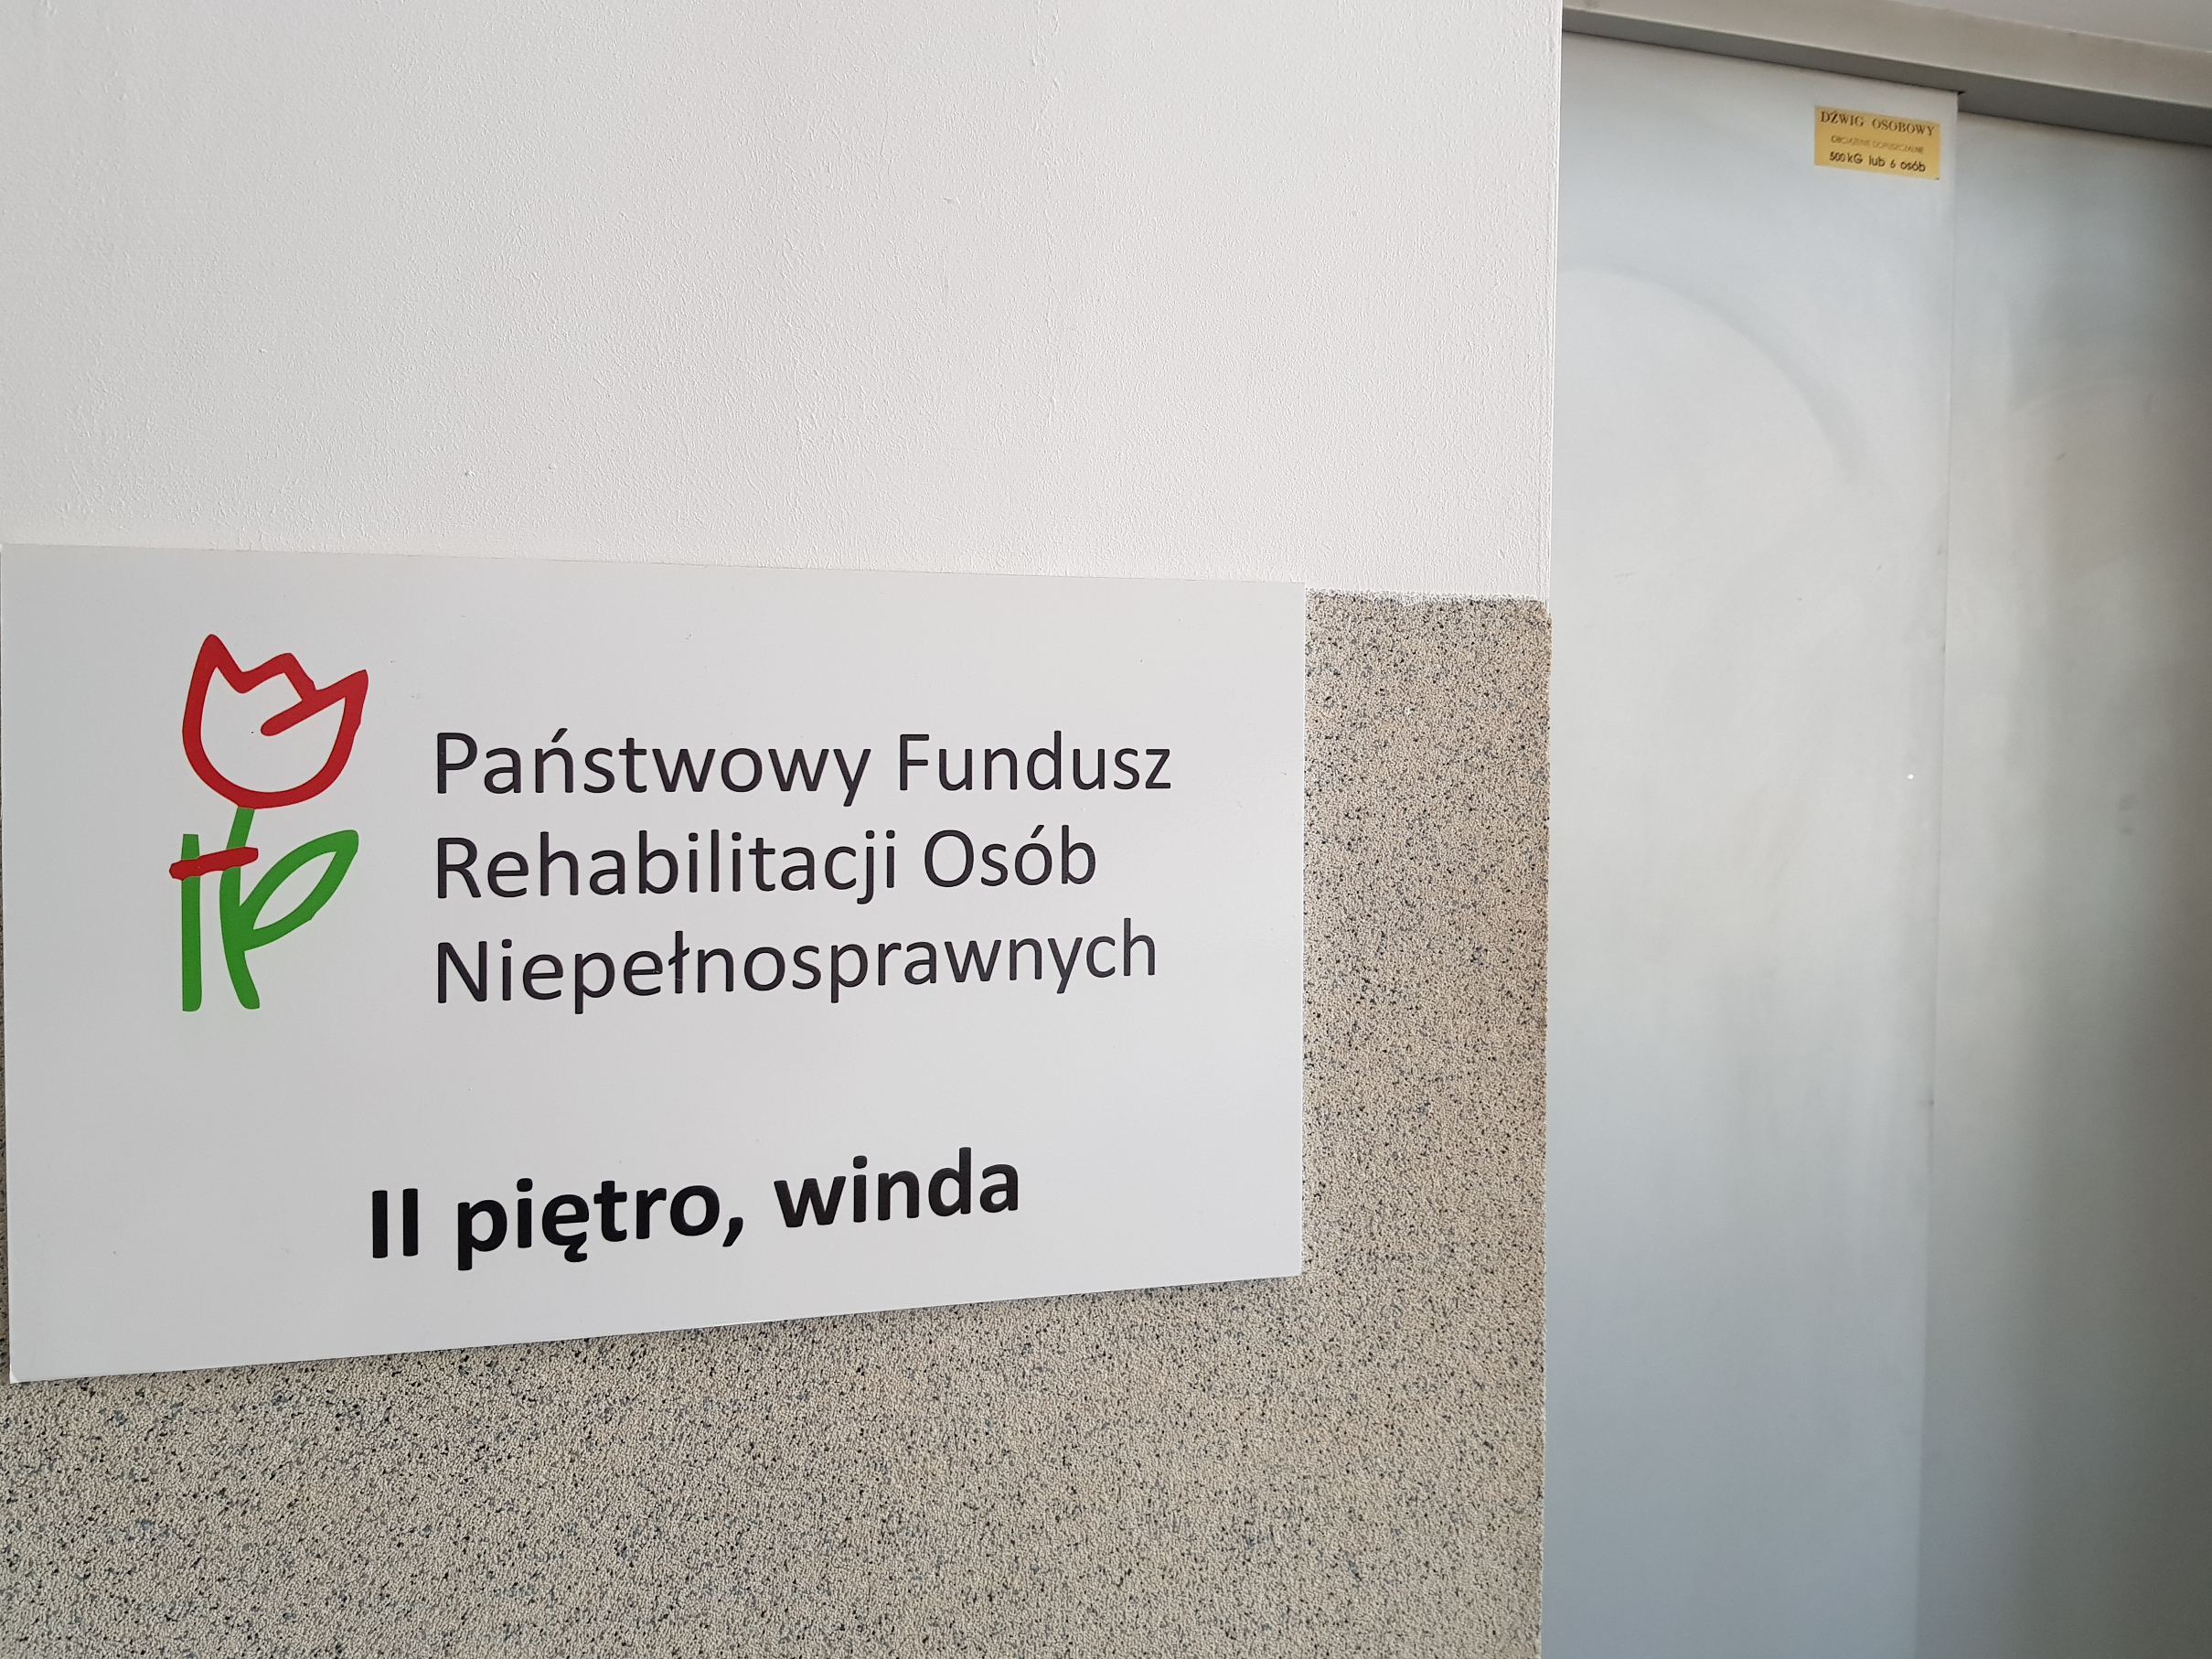 Na białej ścianie nad beżowymi lamperiami wisi tablica informacyjna z logo PFRON i informacją, gdzie mieści się Oddział - drugie piętro, dostępne za pomocą windy. Po prawej stronie od tablicy widoczne drzwi kabiny windy.